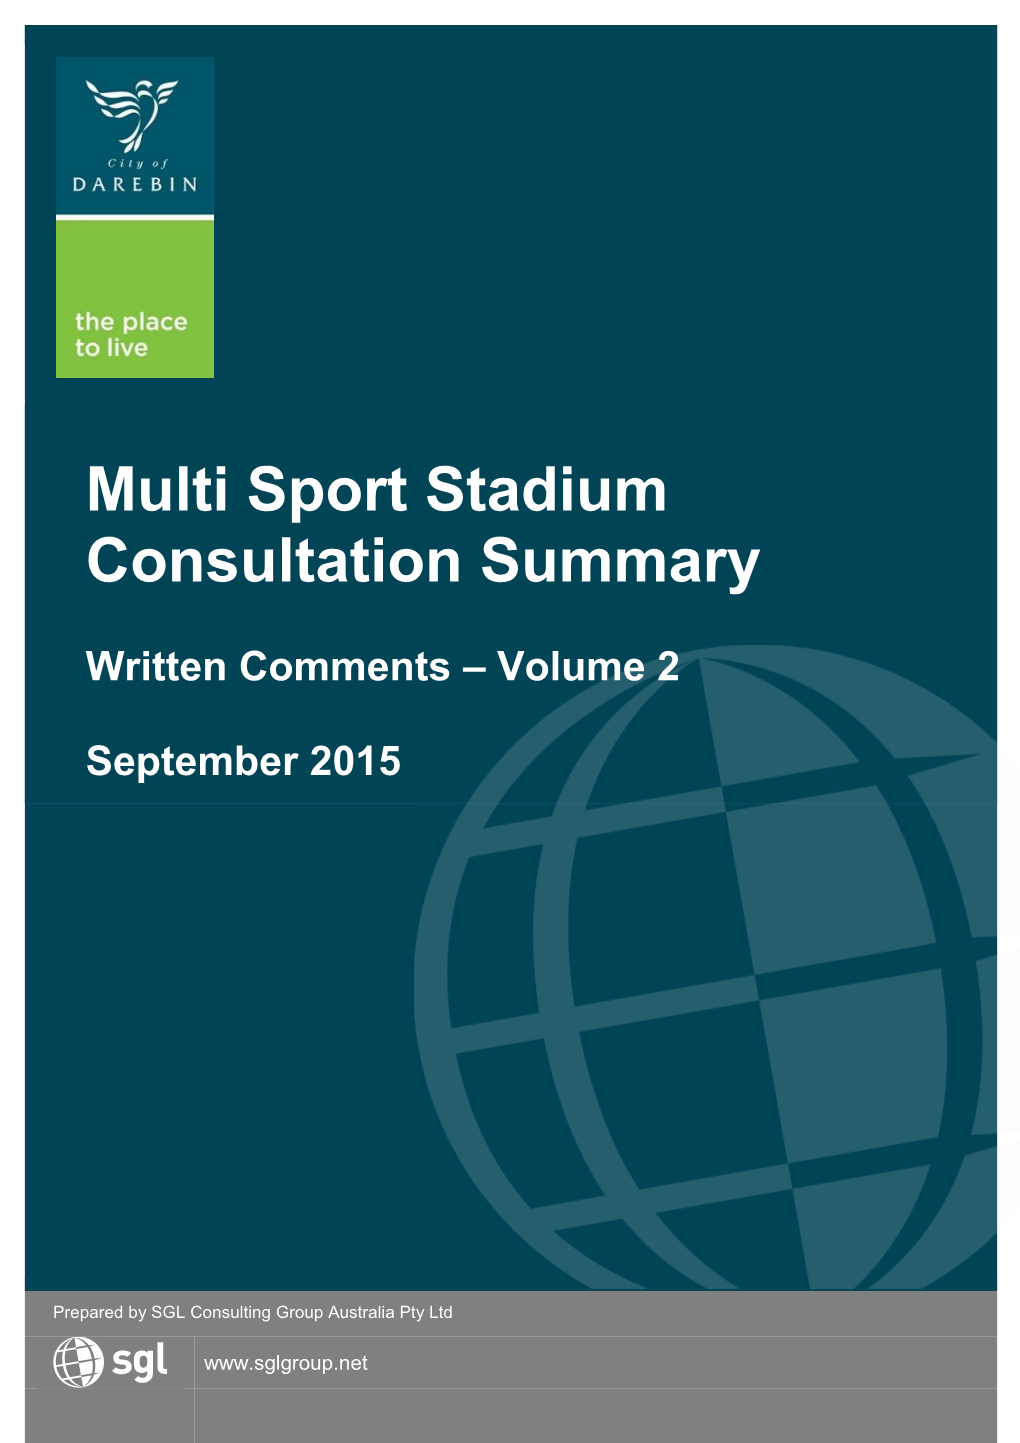 Multi Sport Stadium Consultation Summary